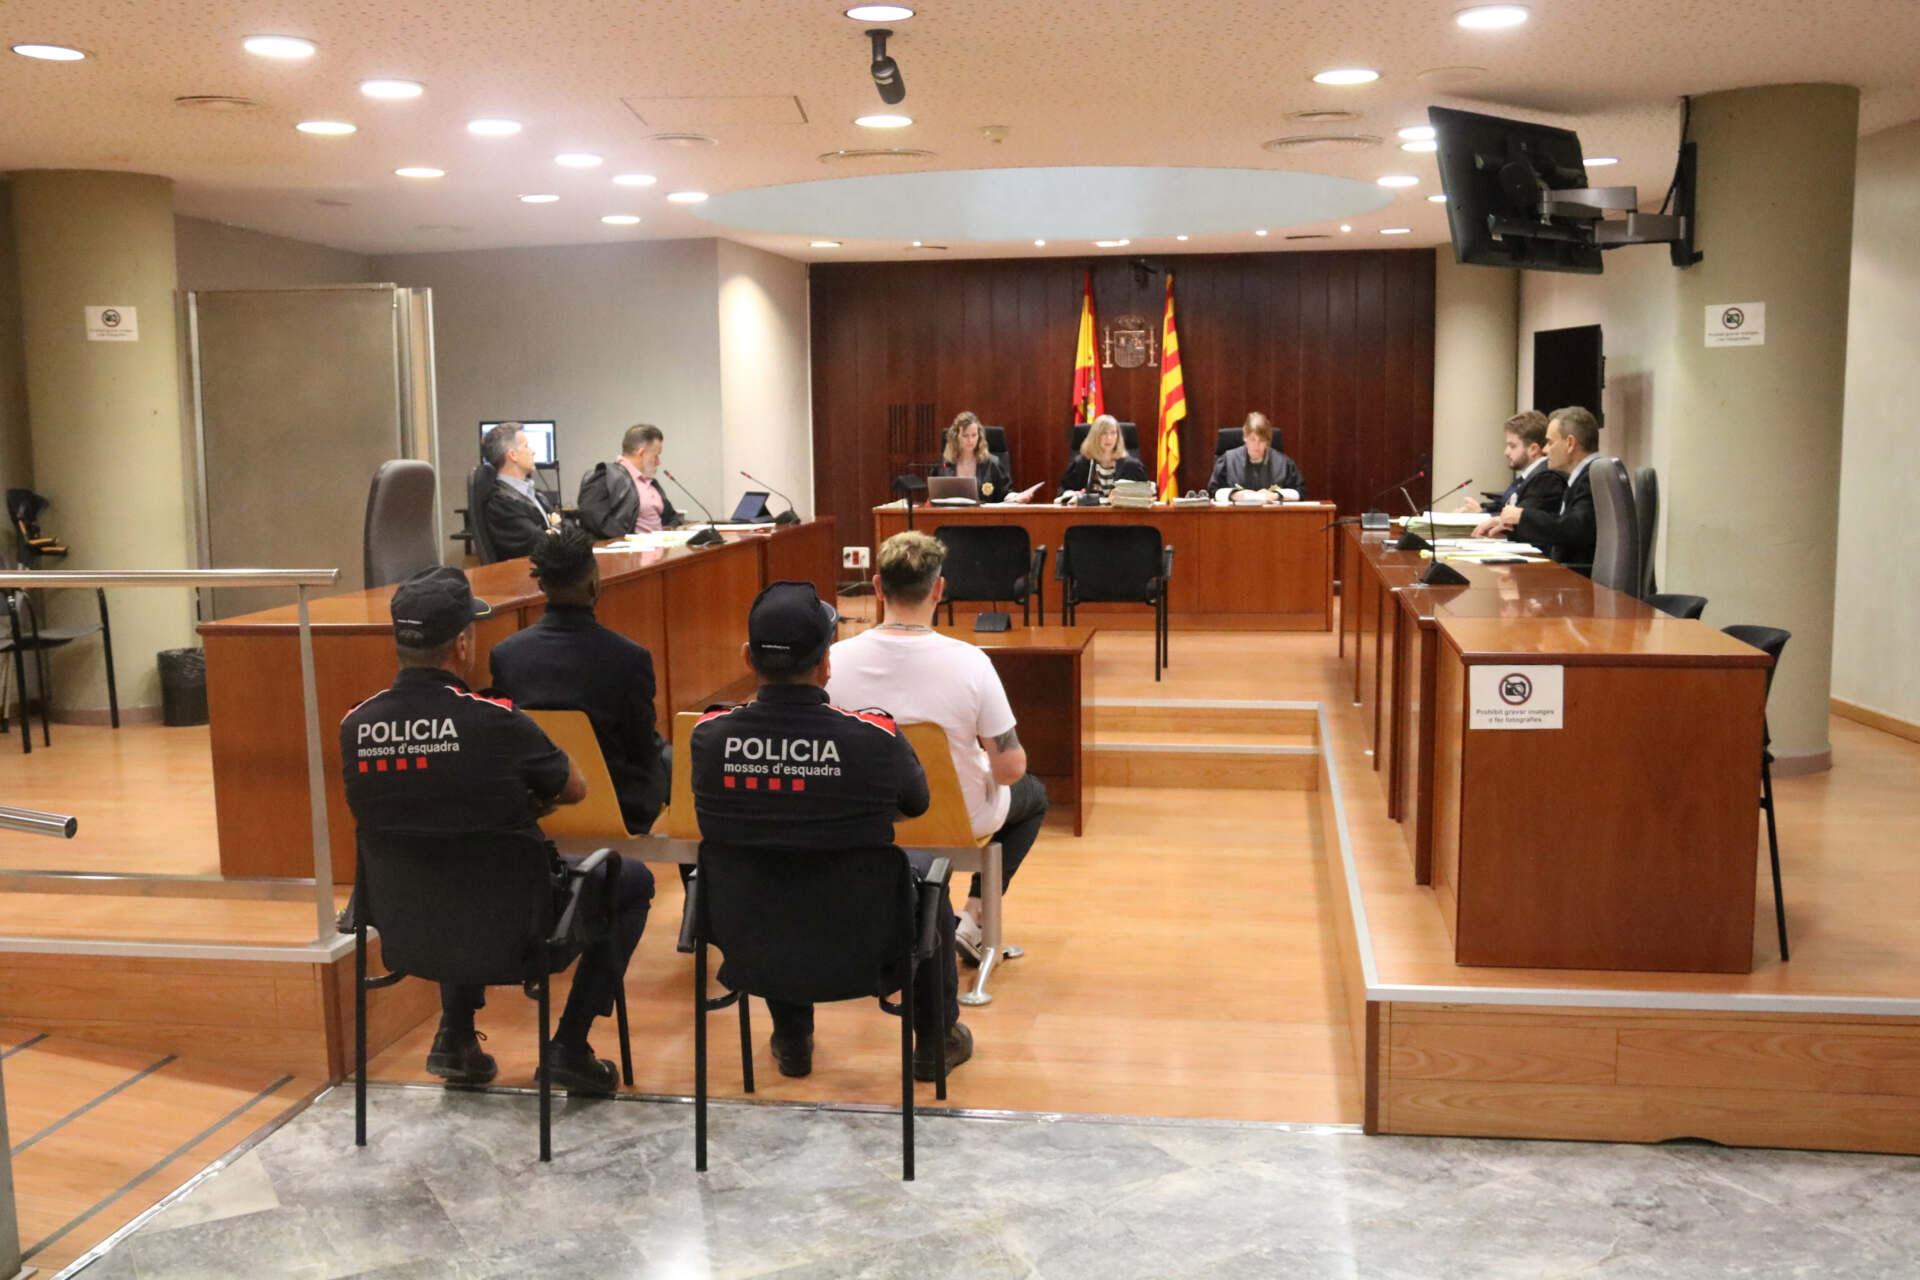 Comença el judici a Lleida contra dos homes acusats d’agressió sexual